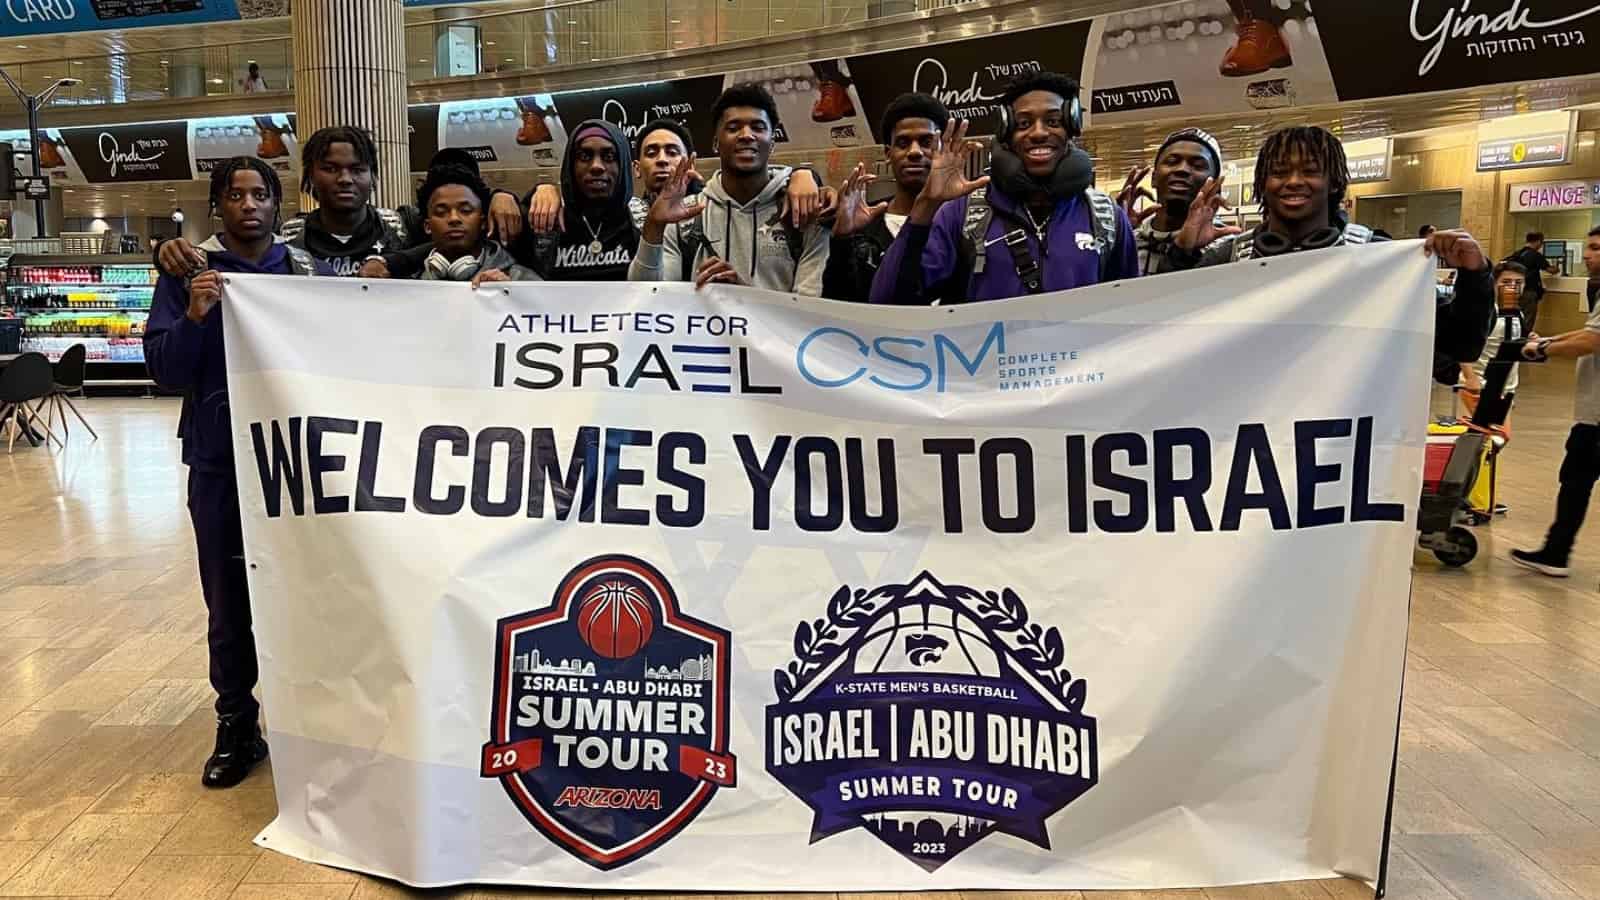 فرق كرة السلة في الكليات العليا تستعيد عافيتها في إسرائيل